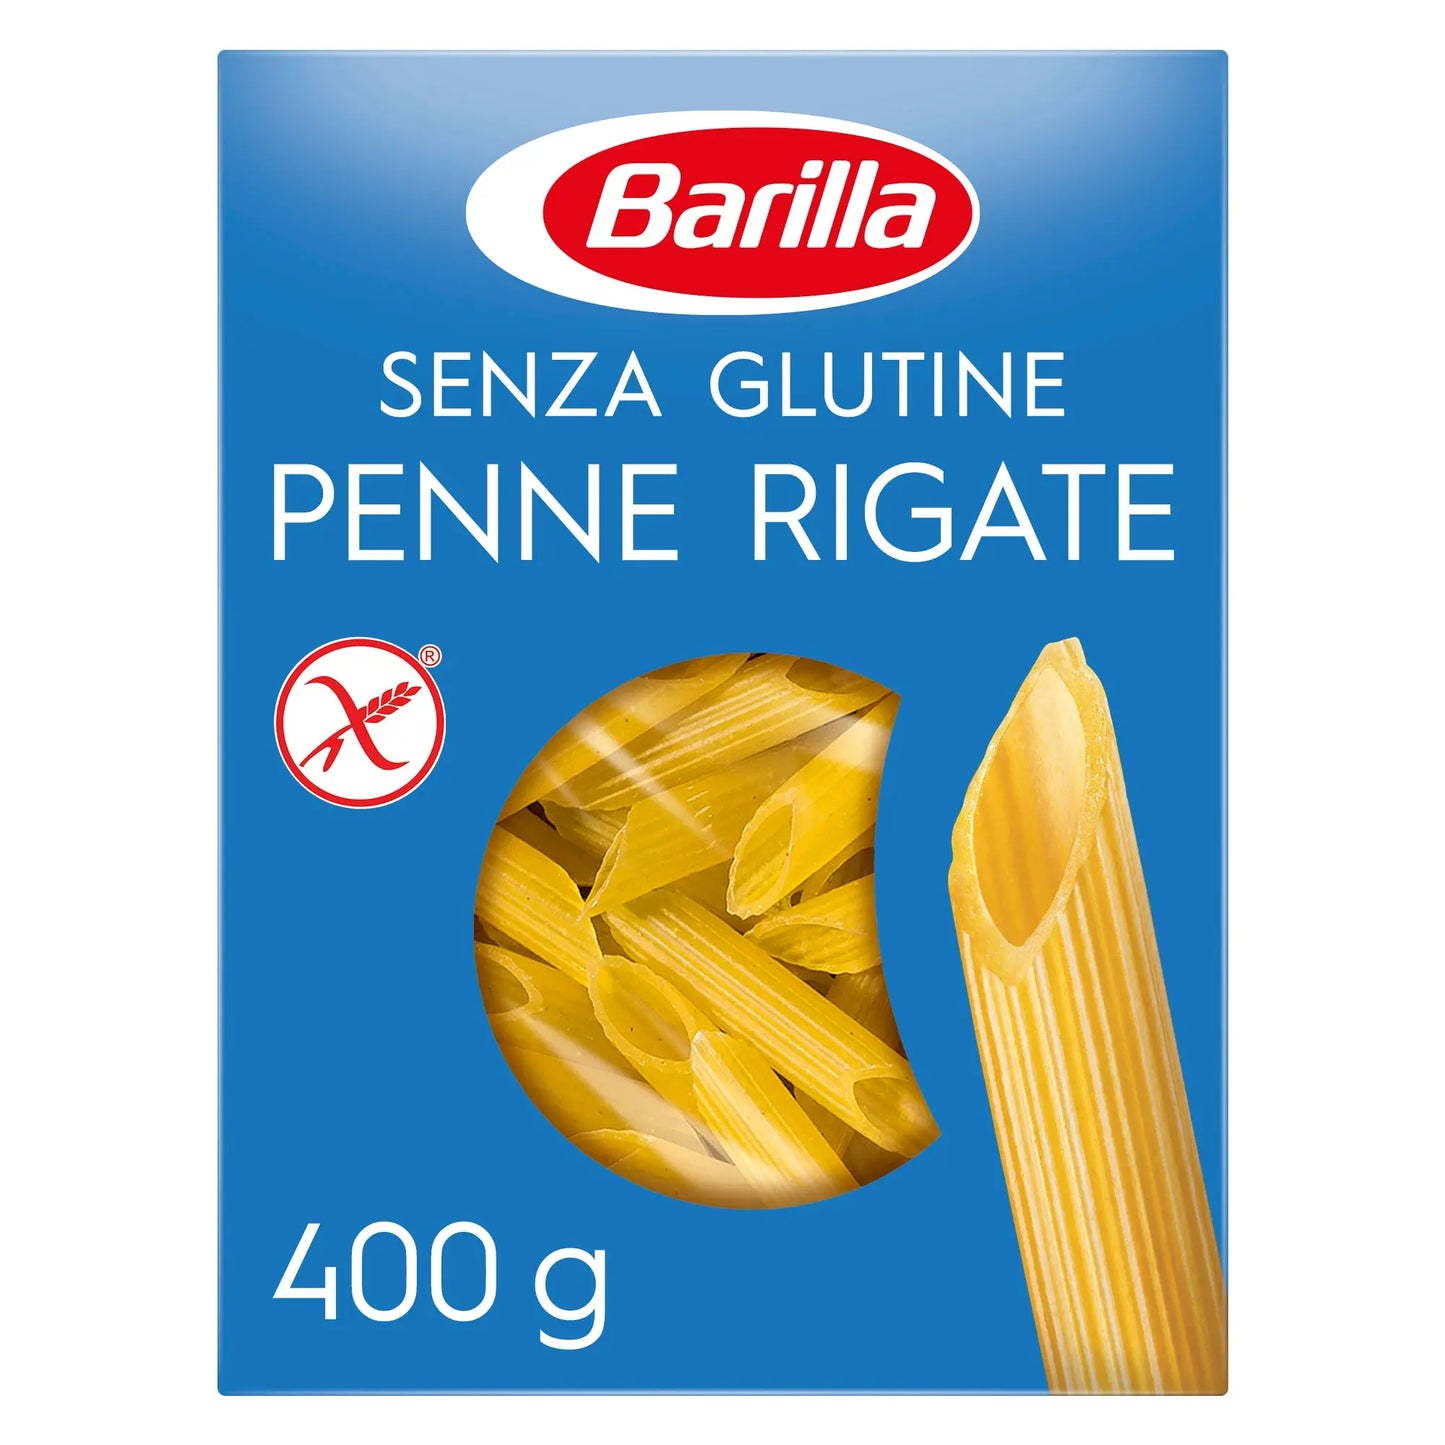 Barilla Pasta Penne Rigate Gluten Free 400g Barilla